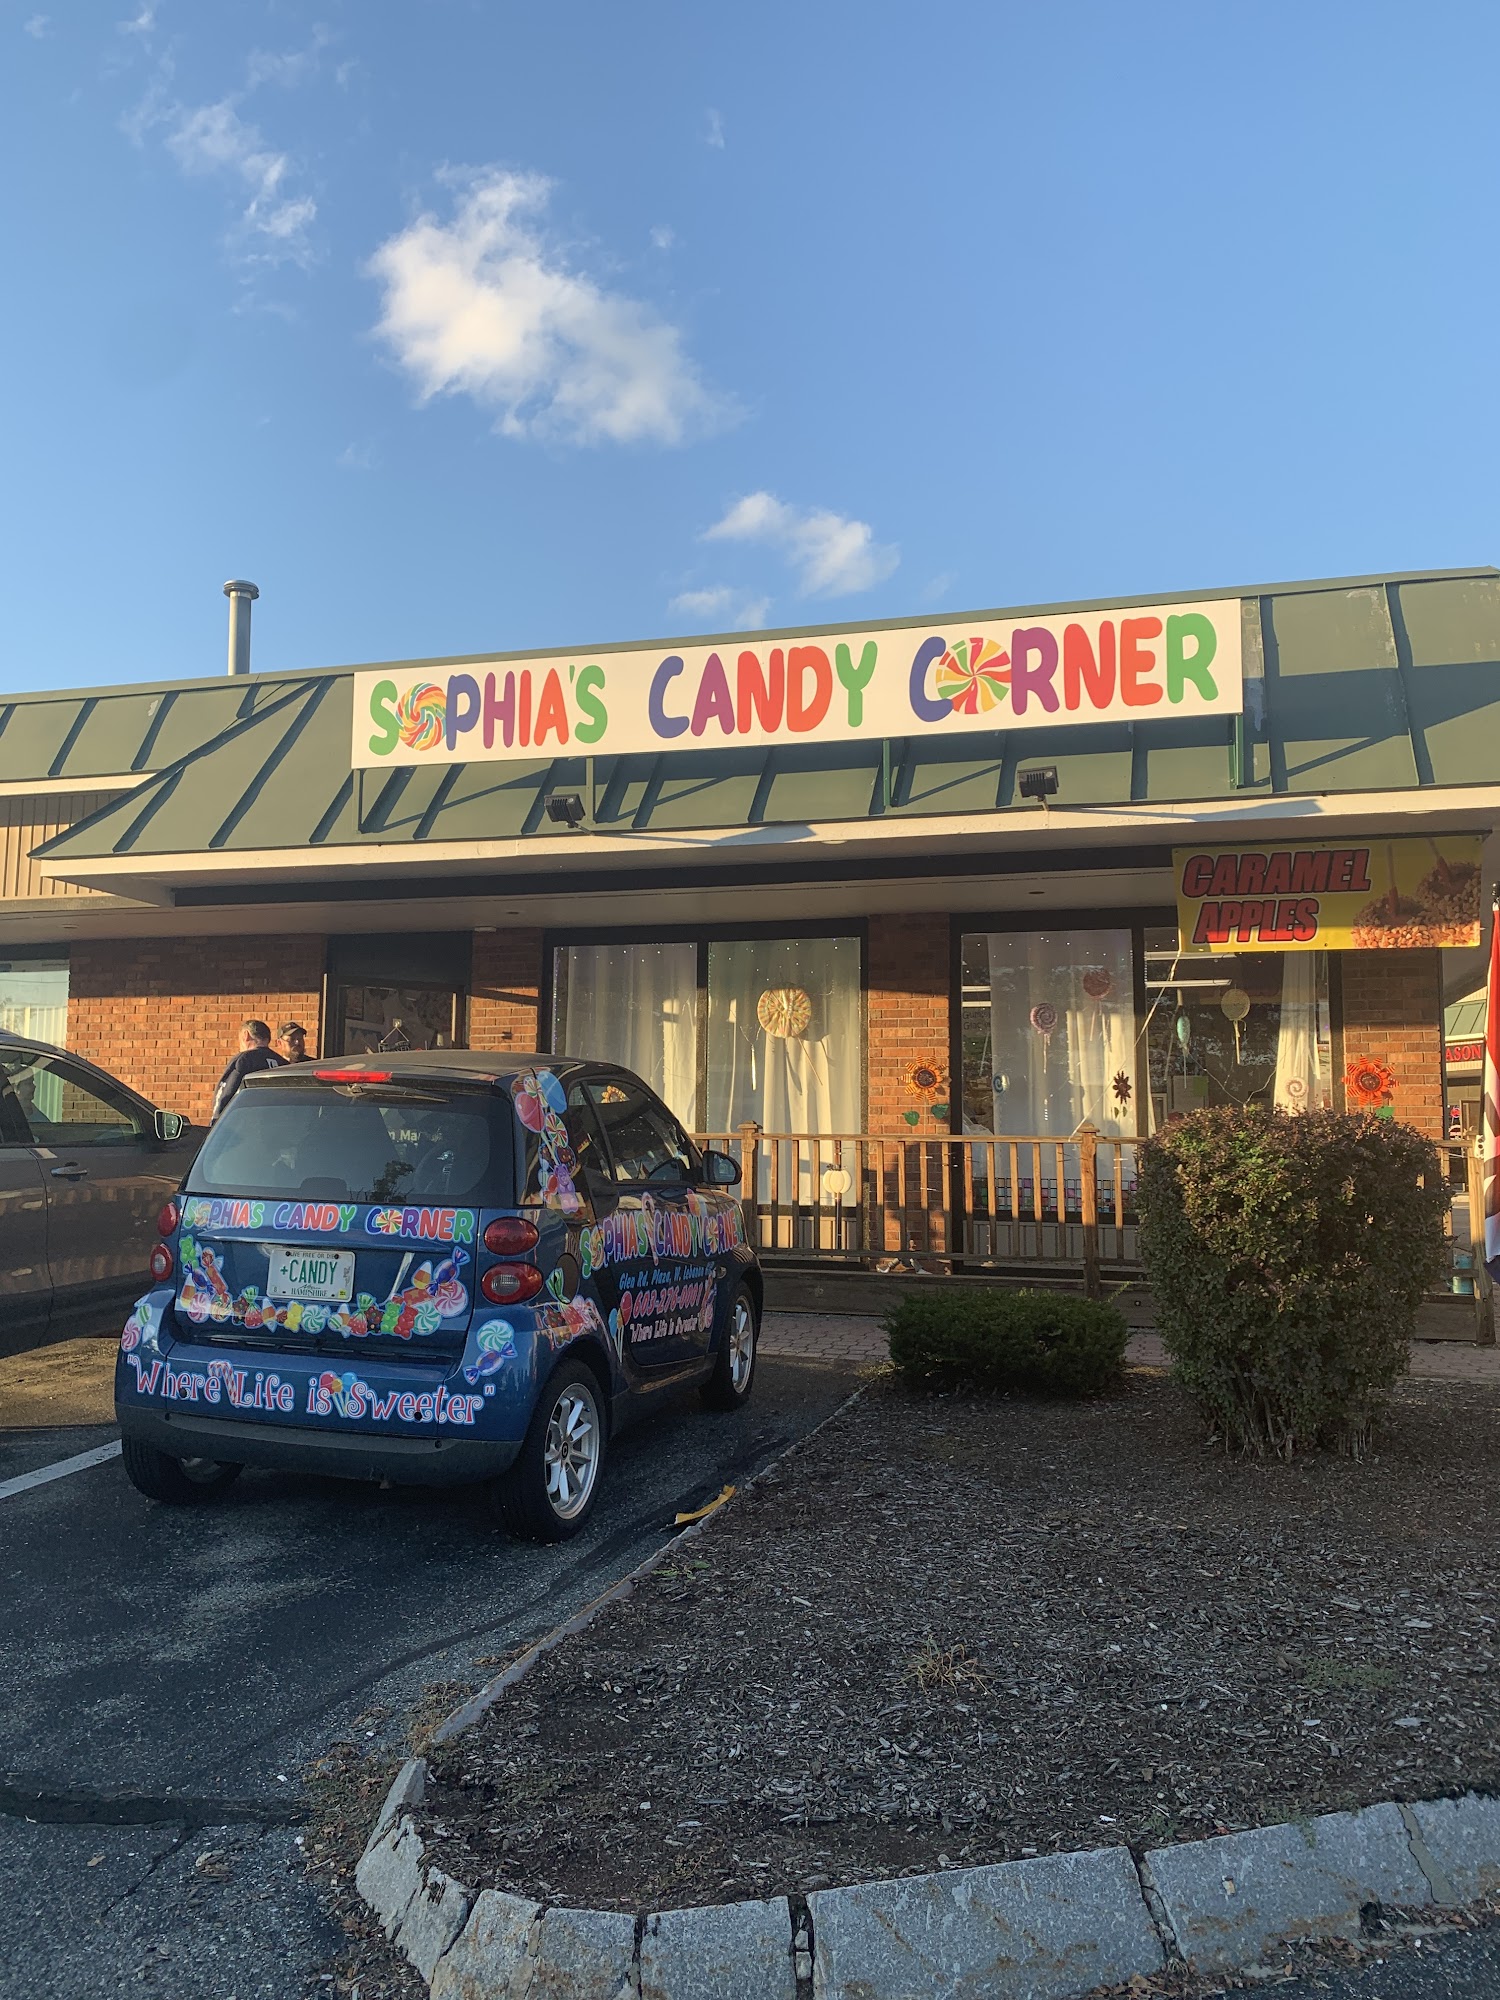 Sophia's Candy Corner